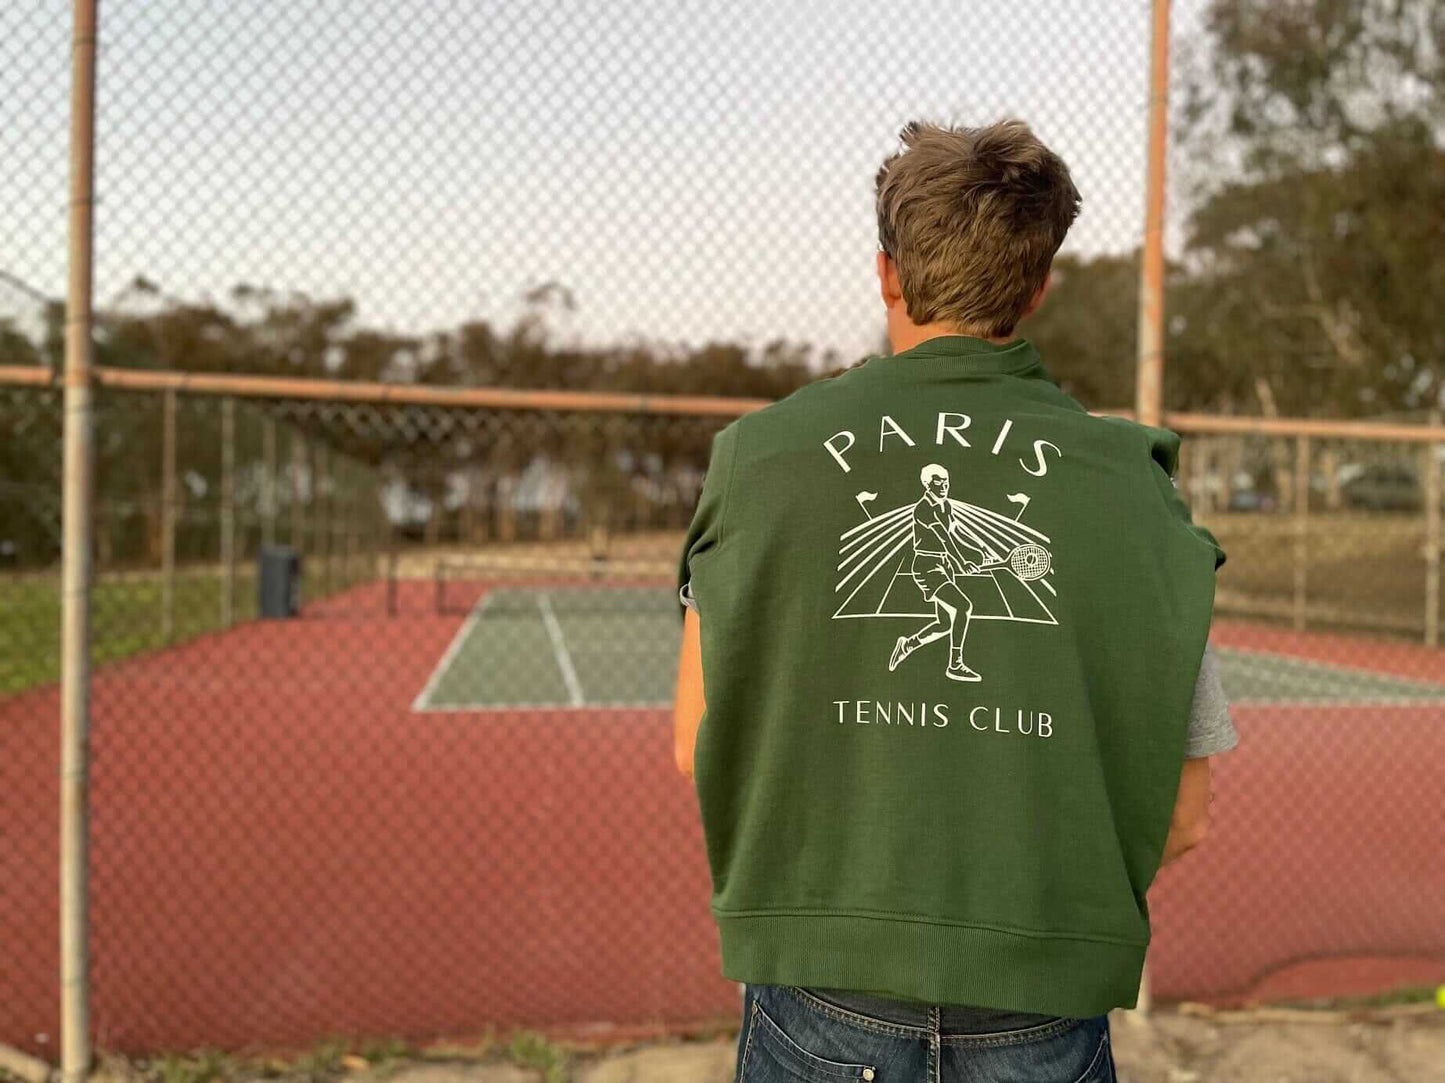 Paris Tennis Club Classic Sweater